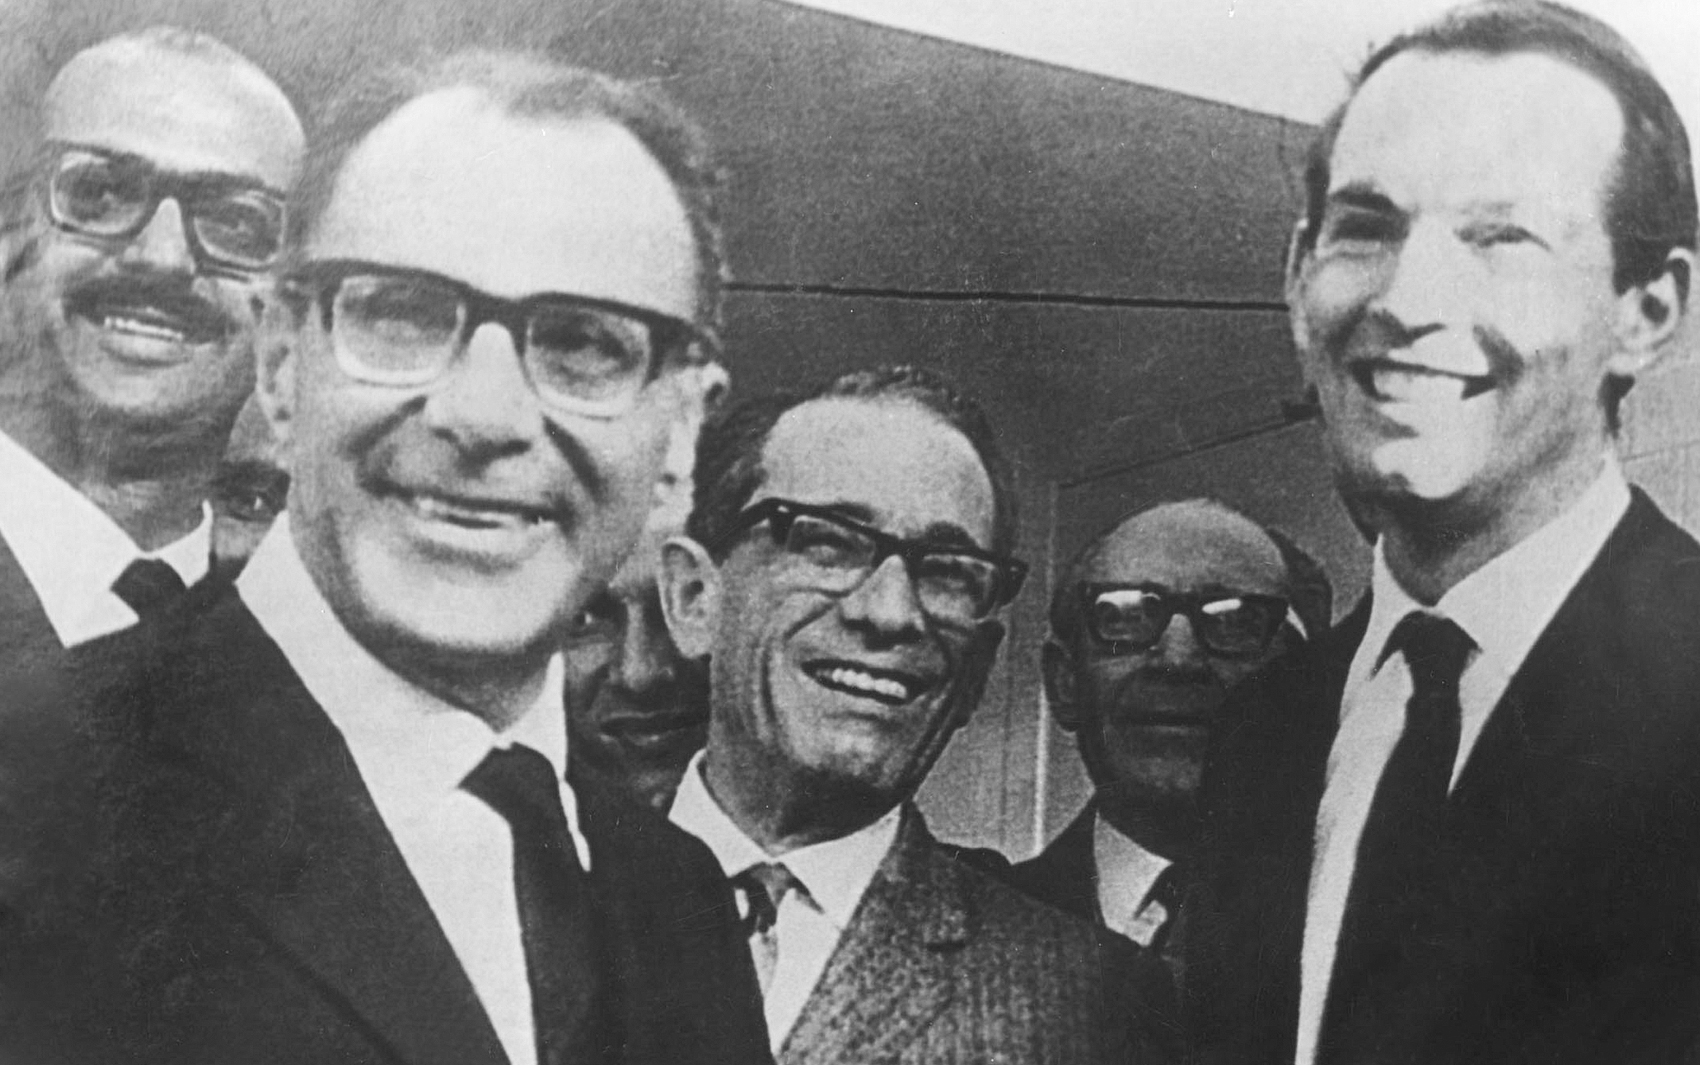 Da esquerda para direita: Adib Jatene, Dante Pazzanese, Euryclides de Jesus Zerbini, Campos Freire e Christiaan Barnard em foto de 25 de setembro de 1968.